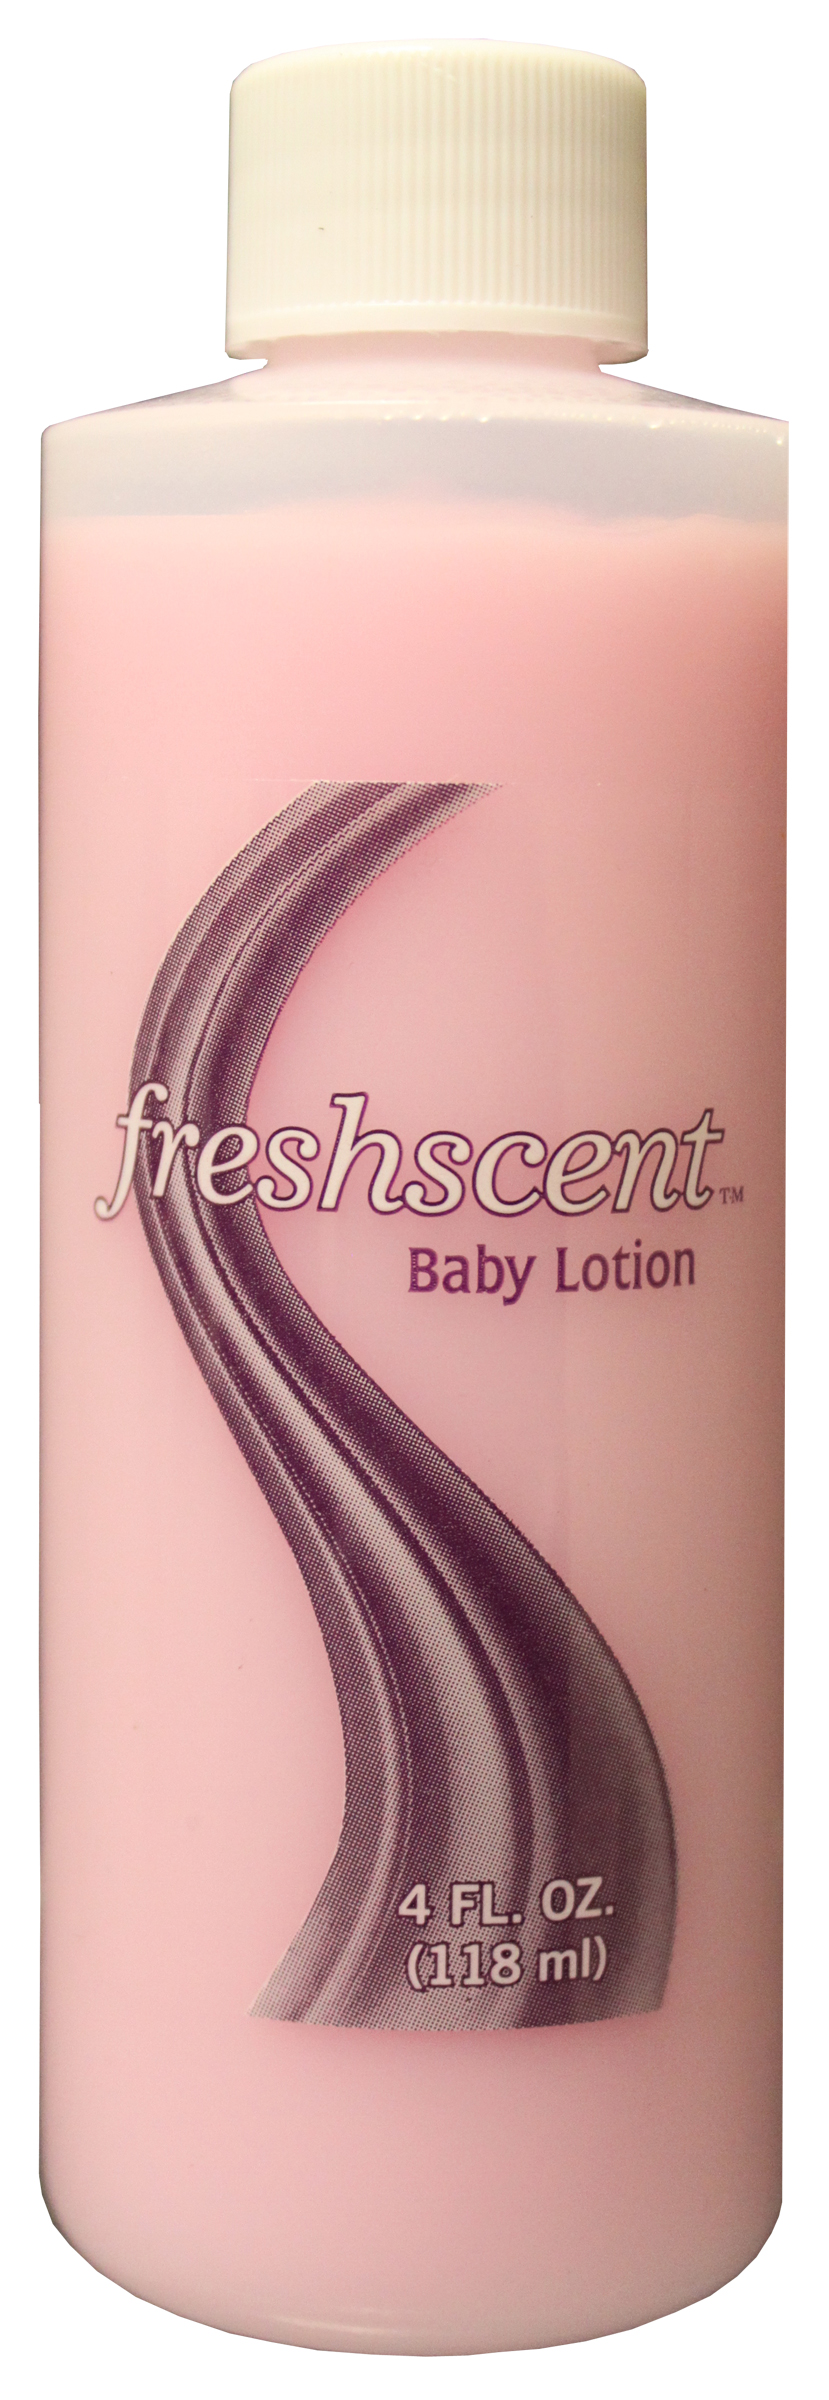 Freshscent 4 oz. Baby LOTION